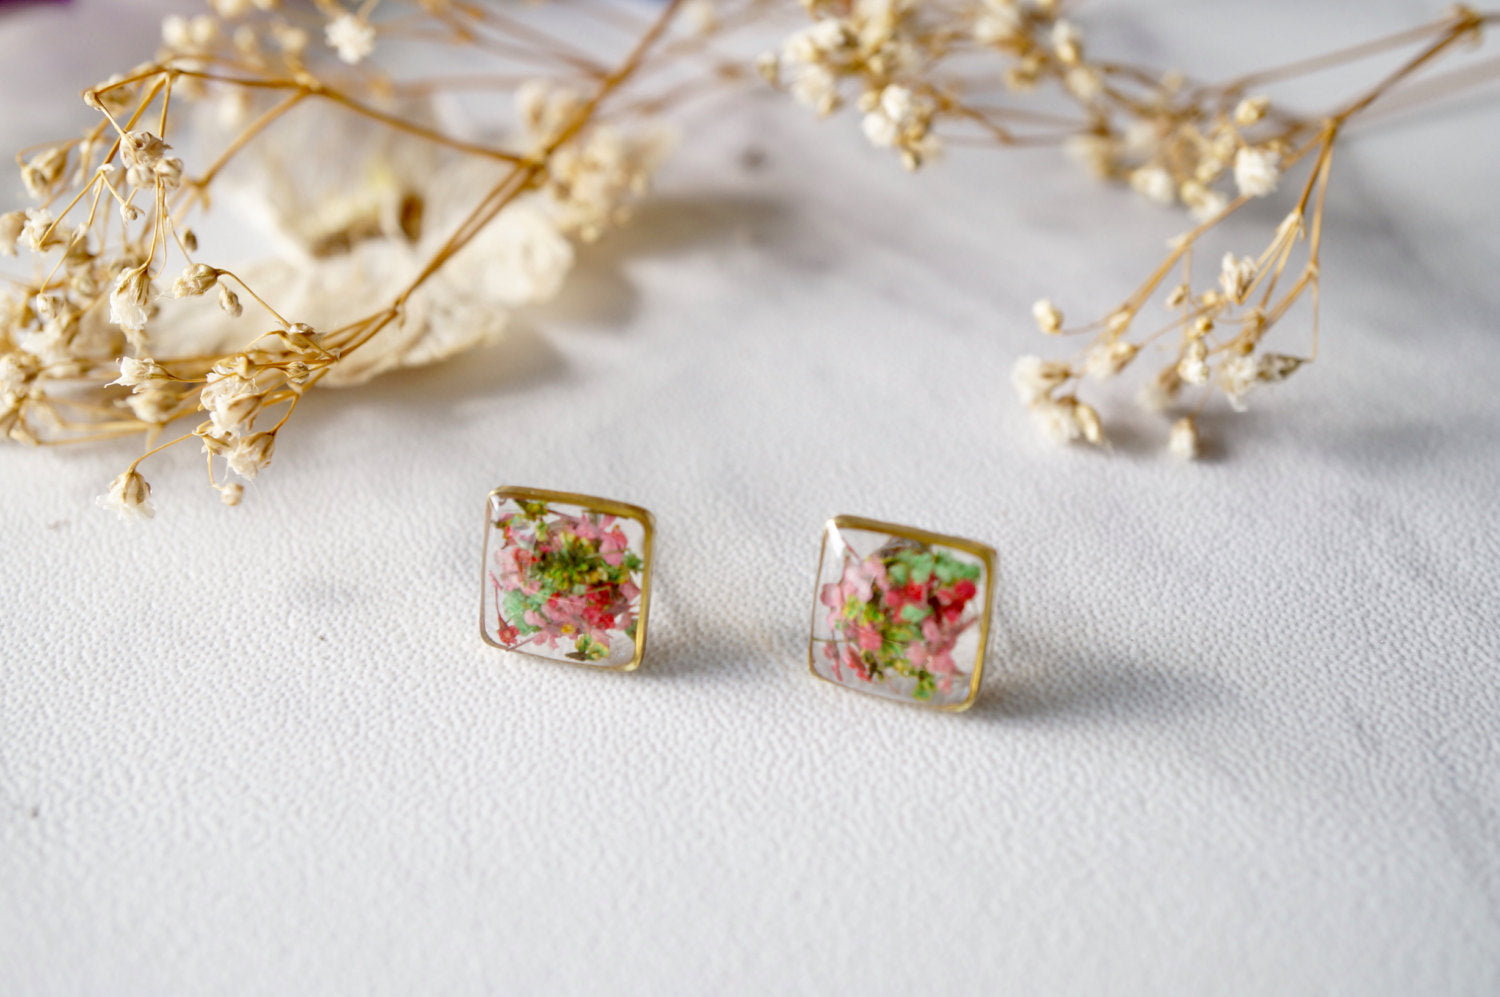 Perky Diva - Scarlet Petal Earrings | Real Preserved Dried Flower Earrings  Premium Jewellery